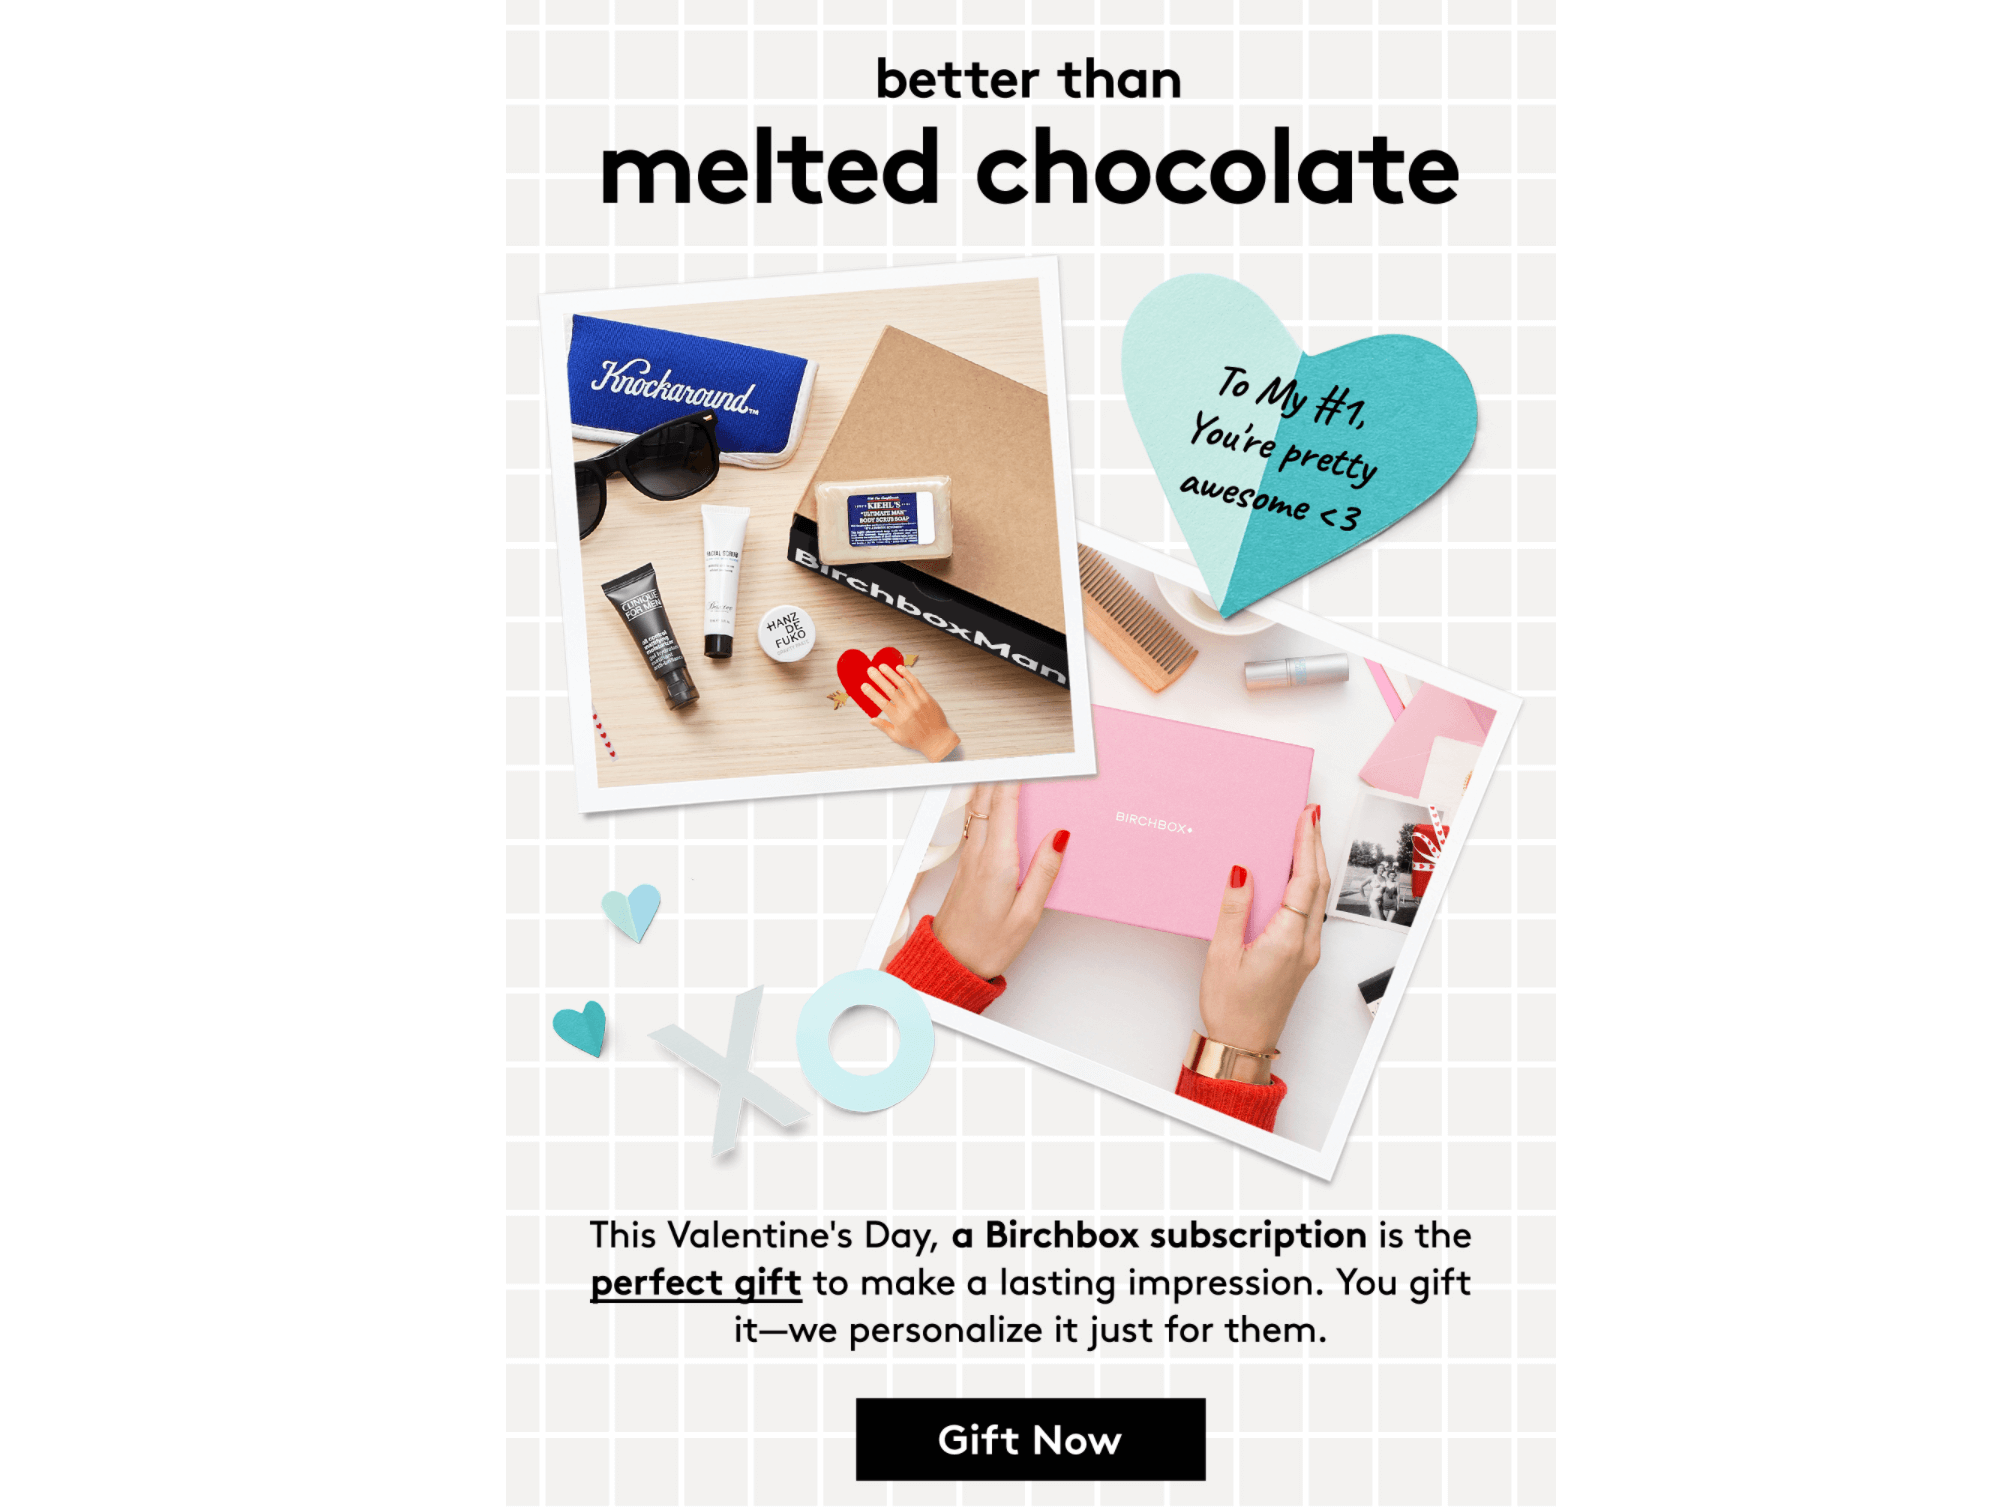 Valentine's Day email from Birchbox